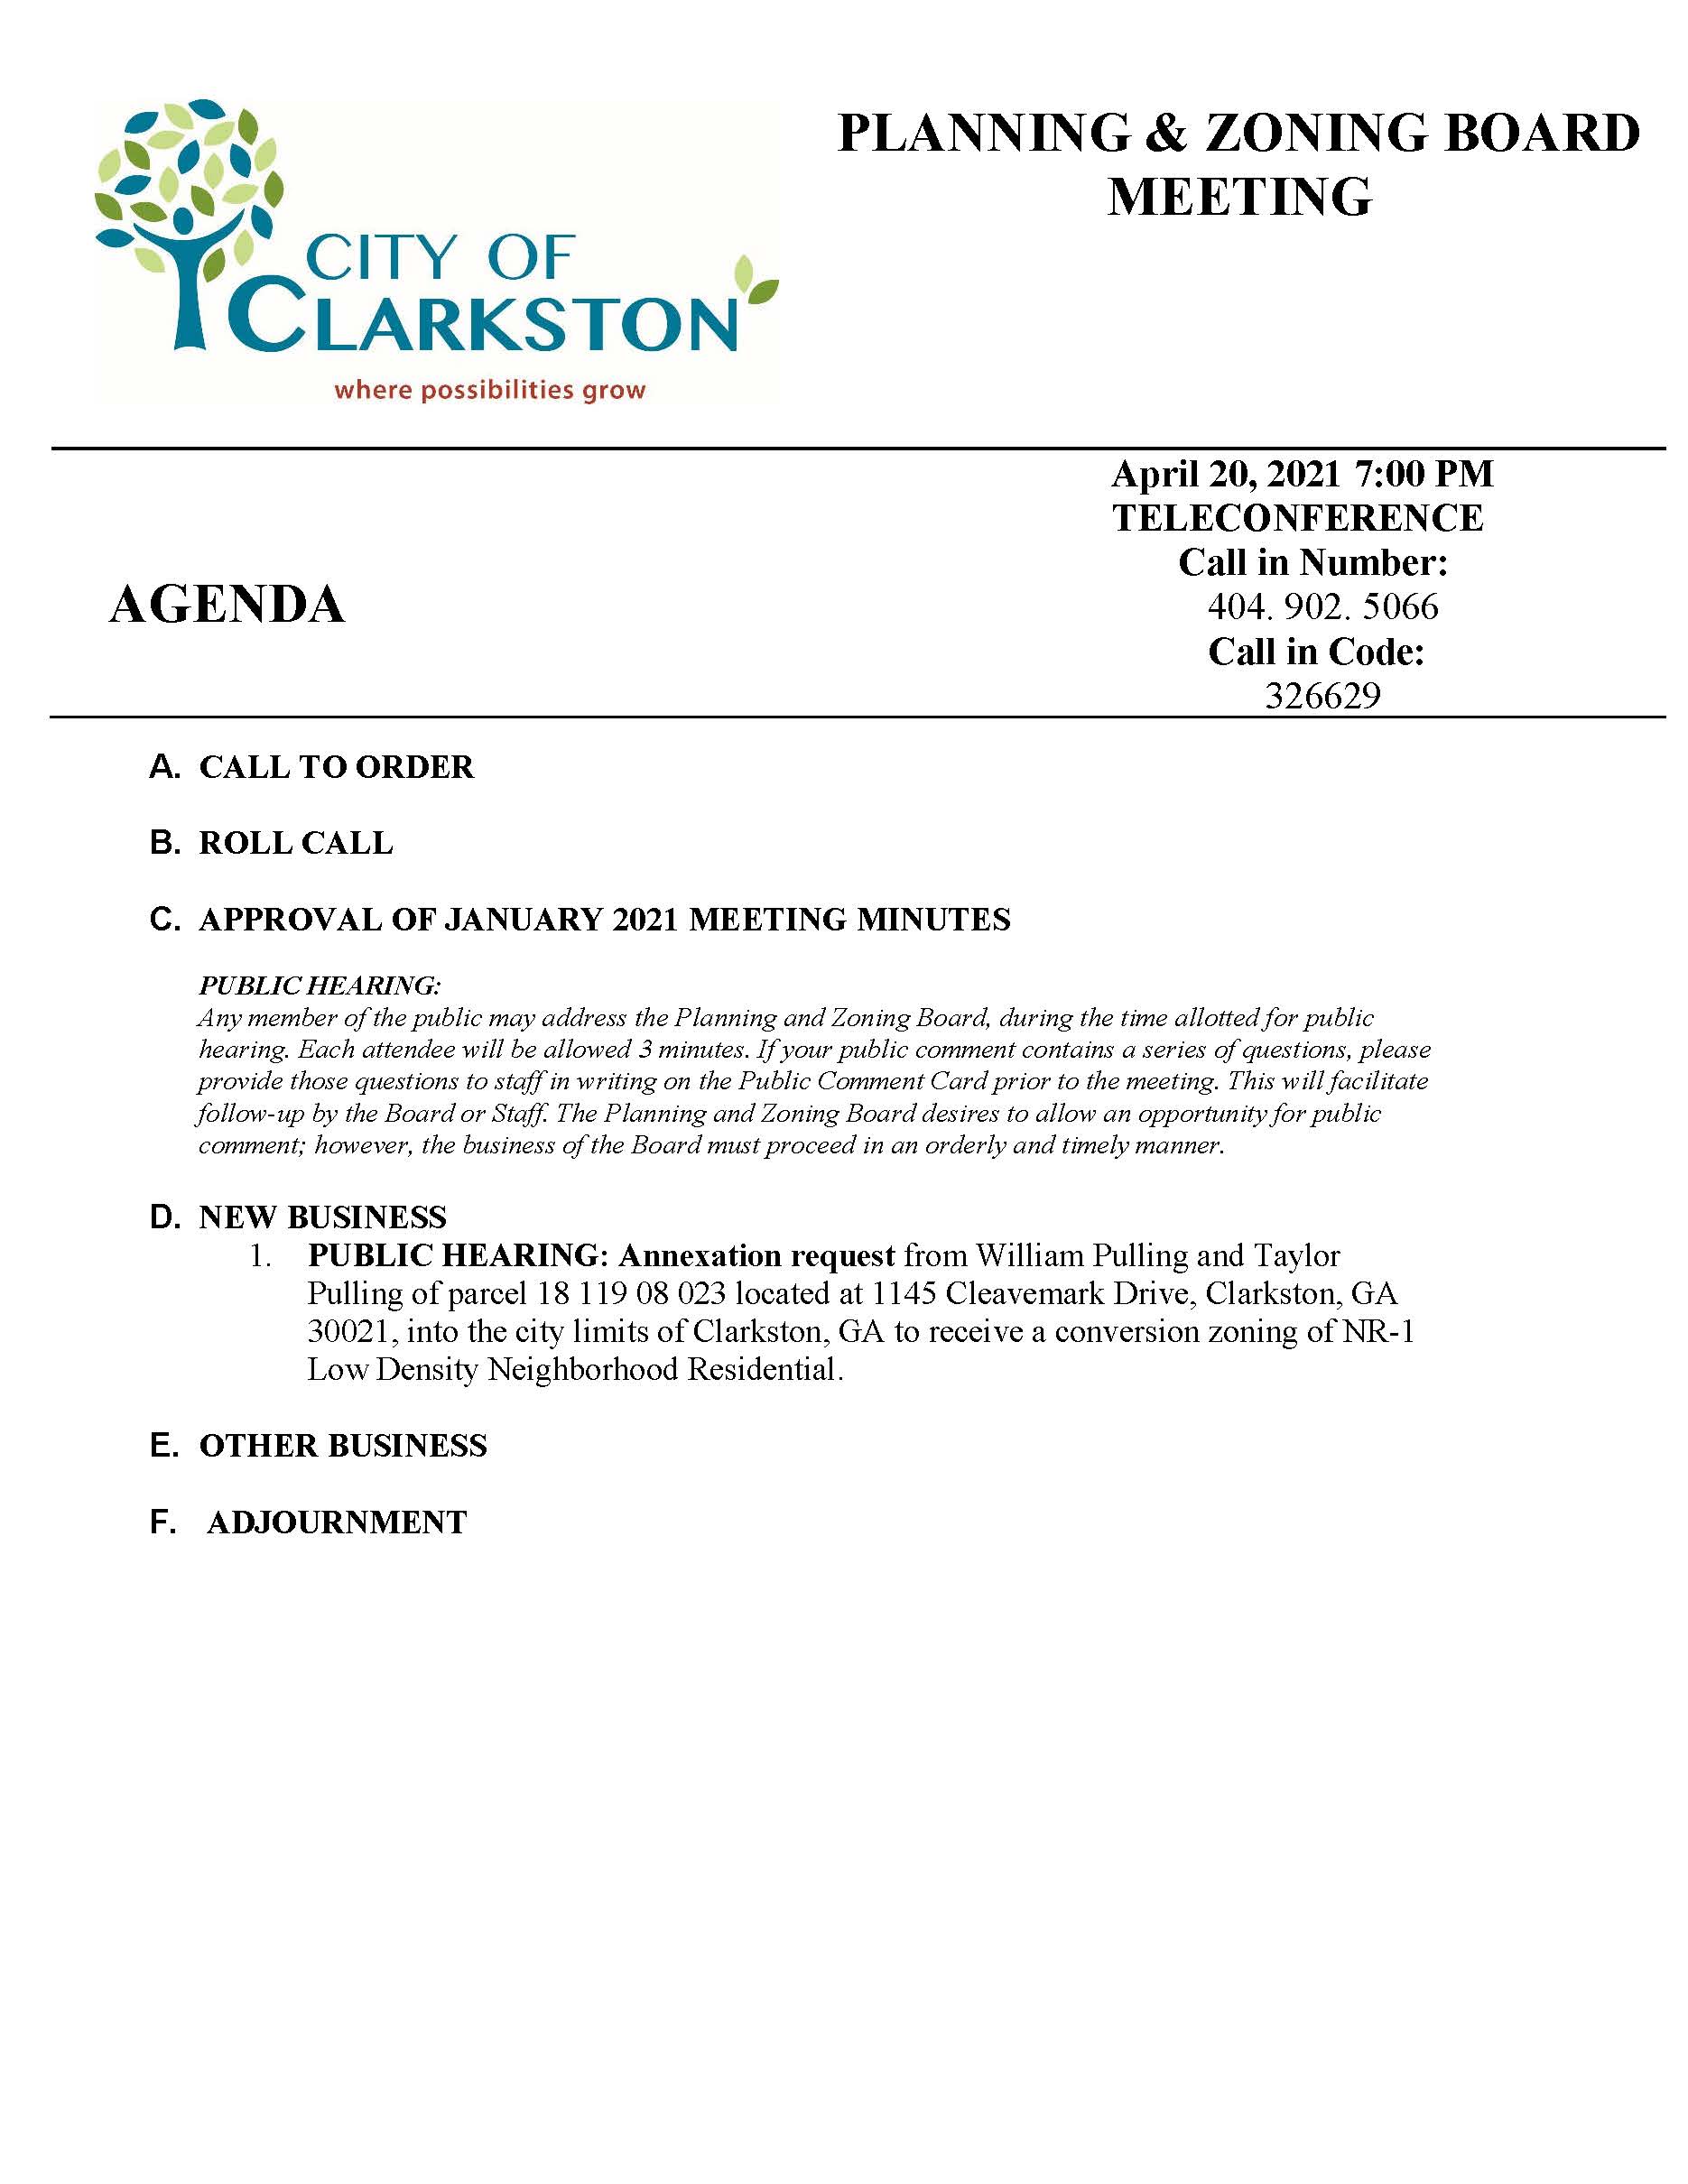 planning & zoning agenda 4-20-2021